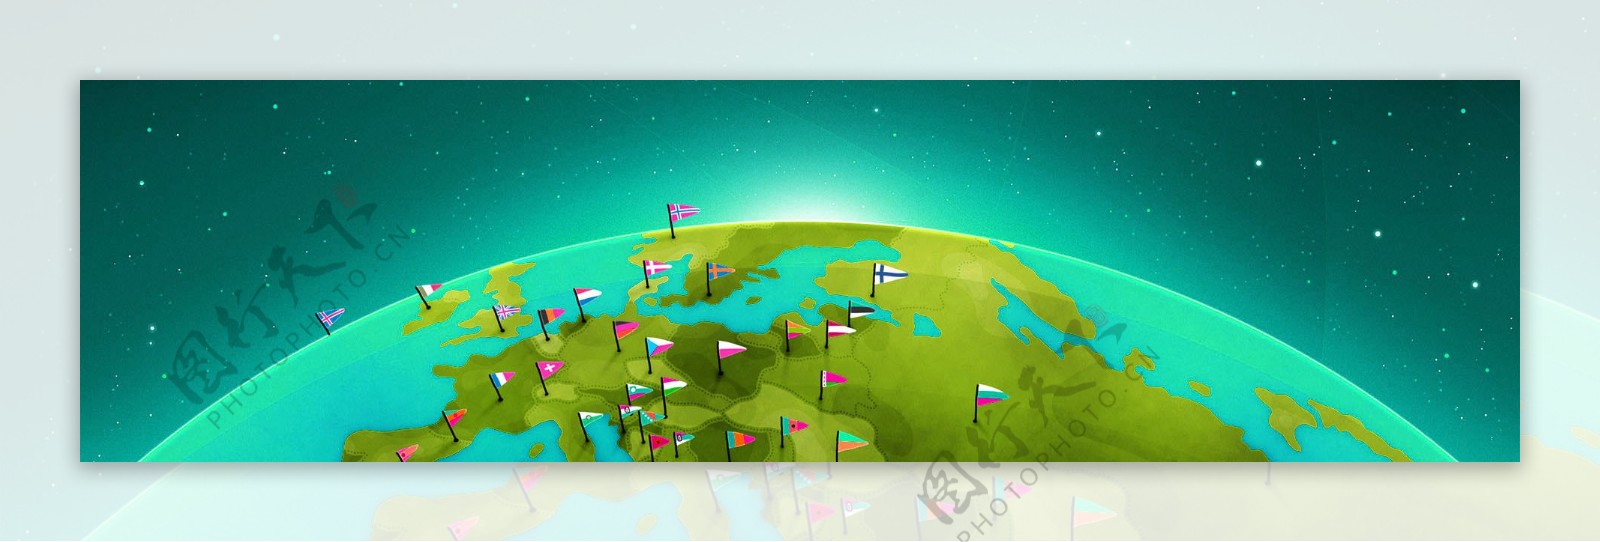 地球国旗banner创意设计